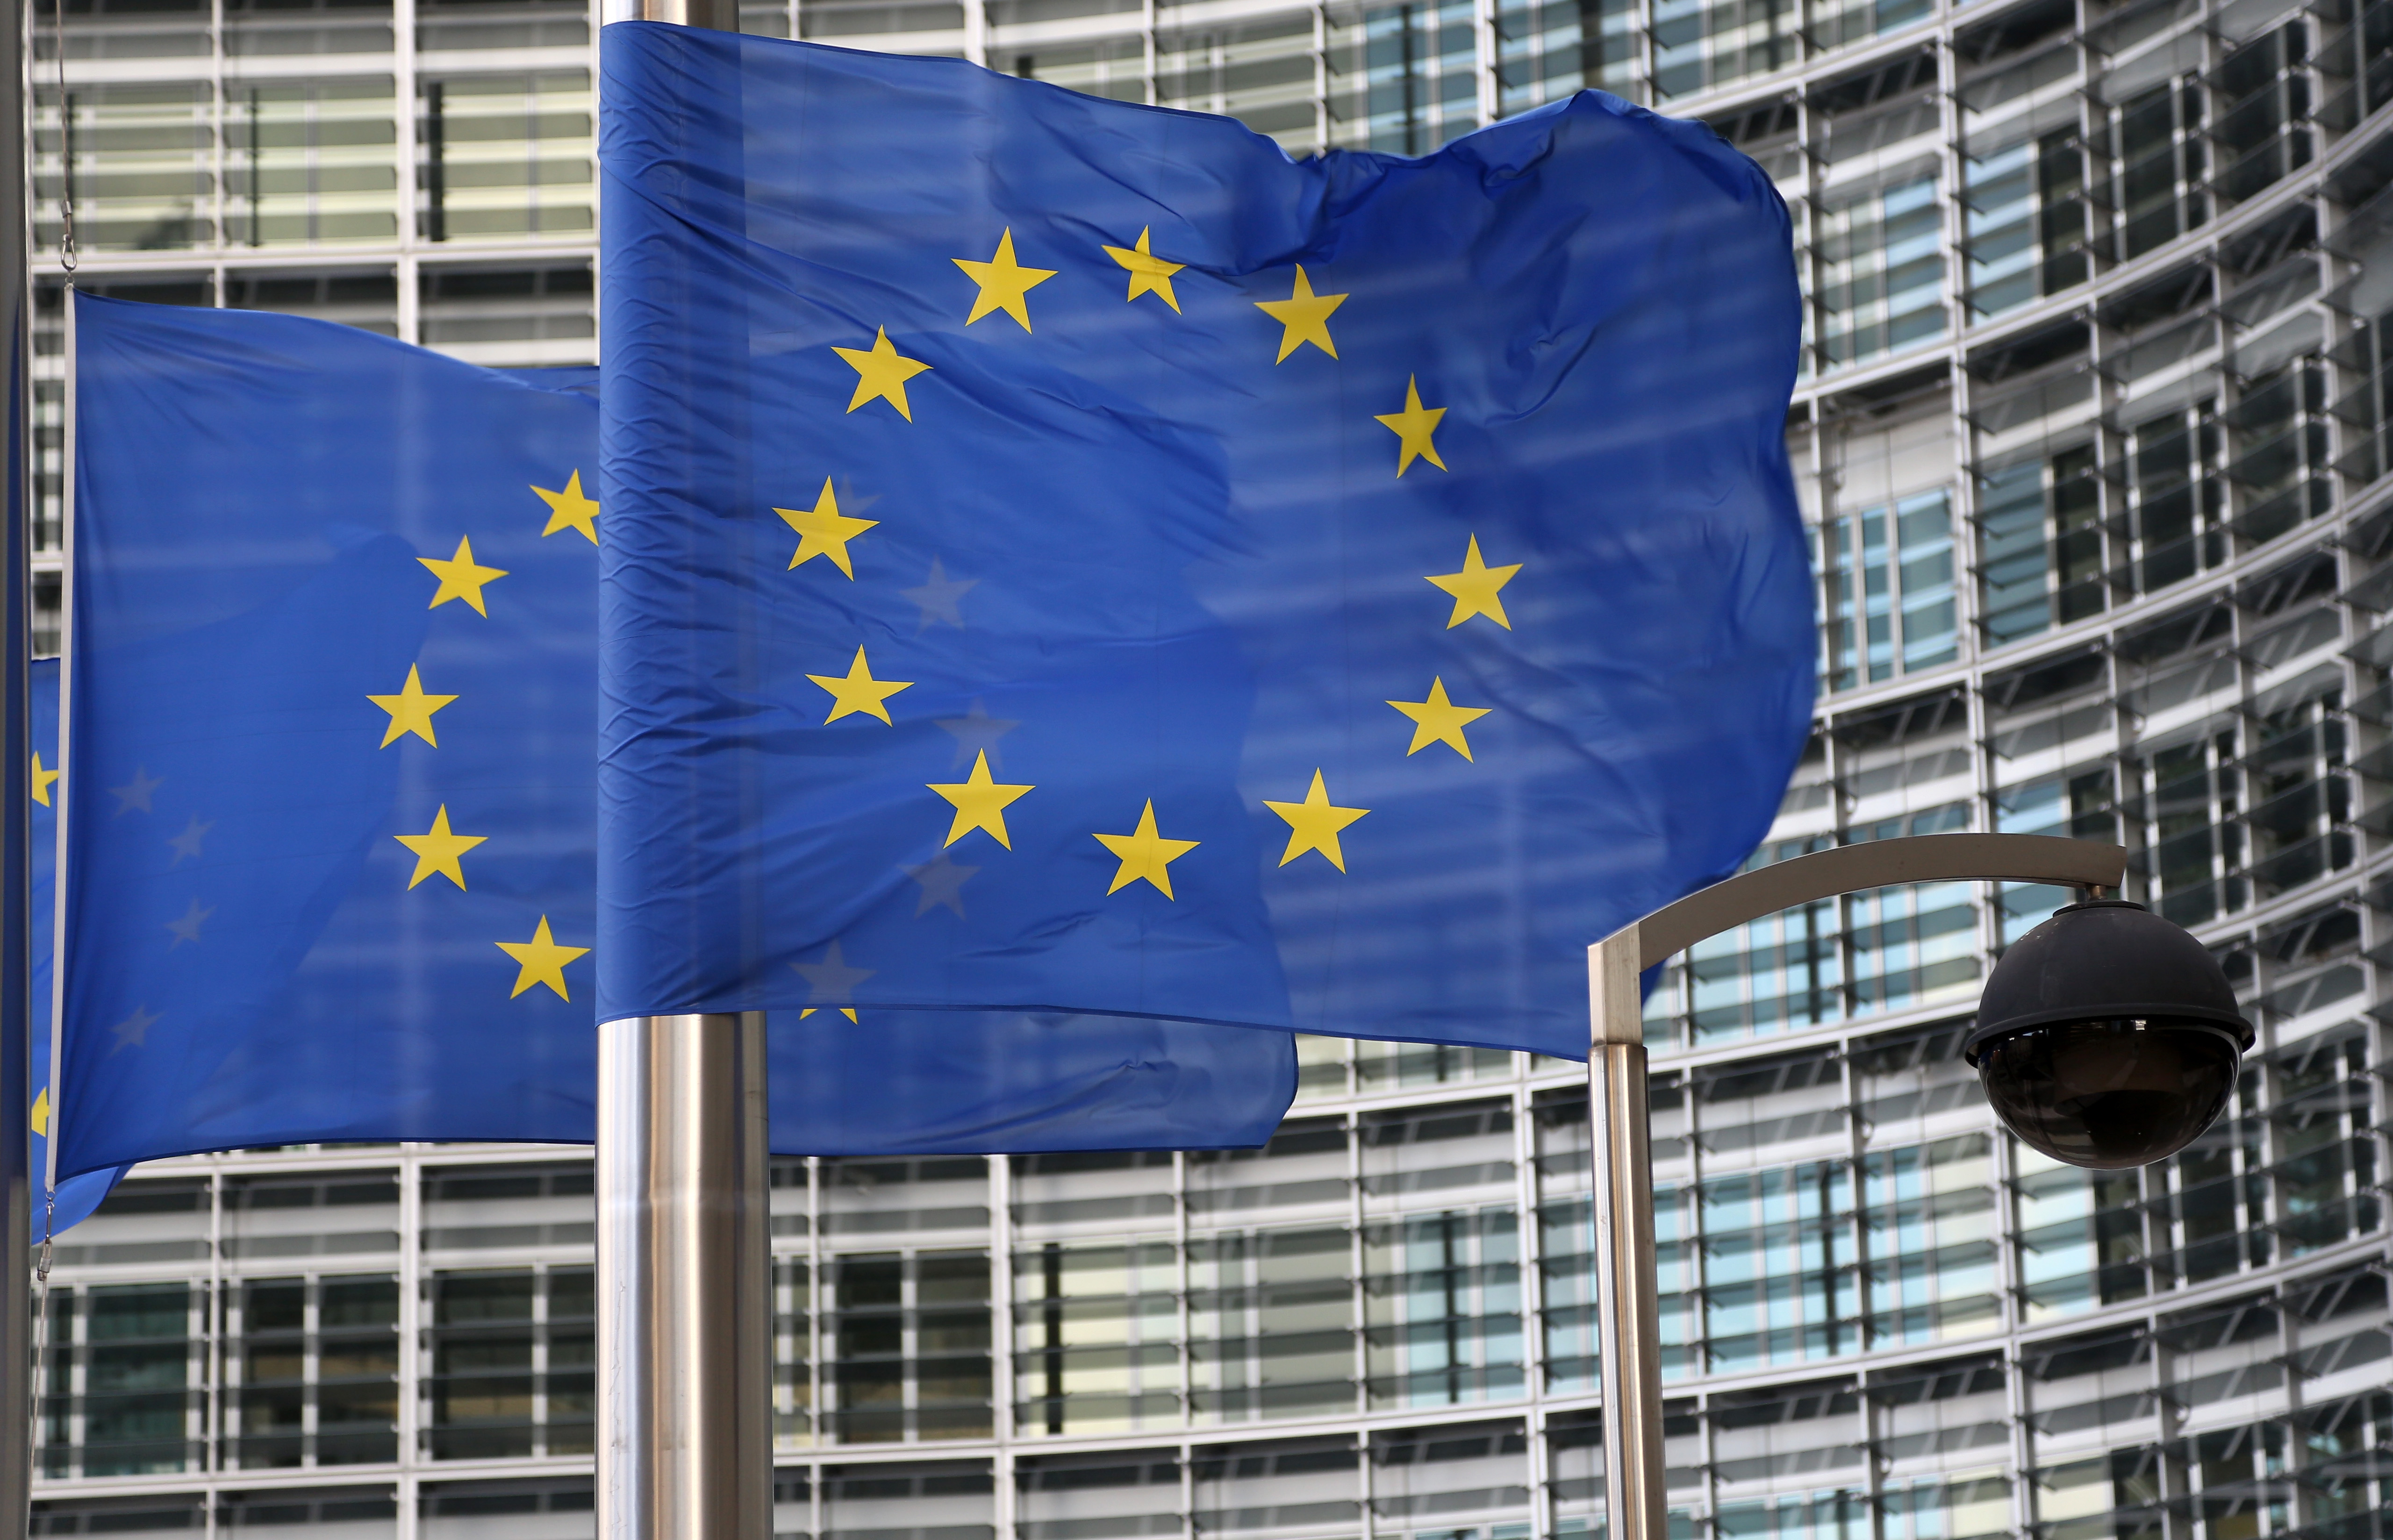 Comisia Europeană a adoptat un set de măsuri ca urmare a creșterii prețurilor la energie